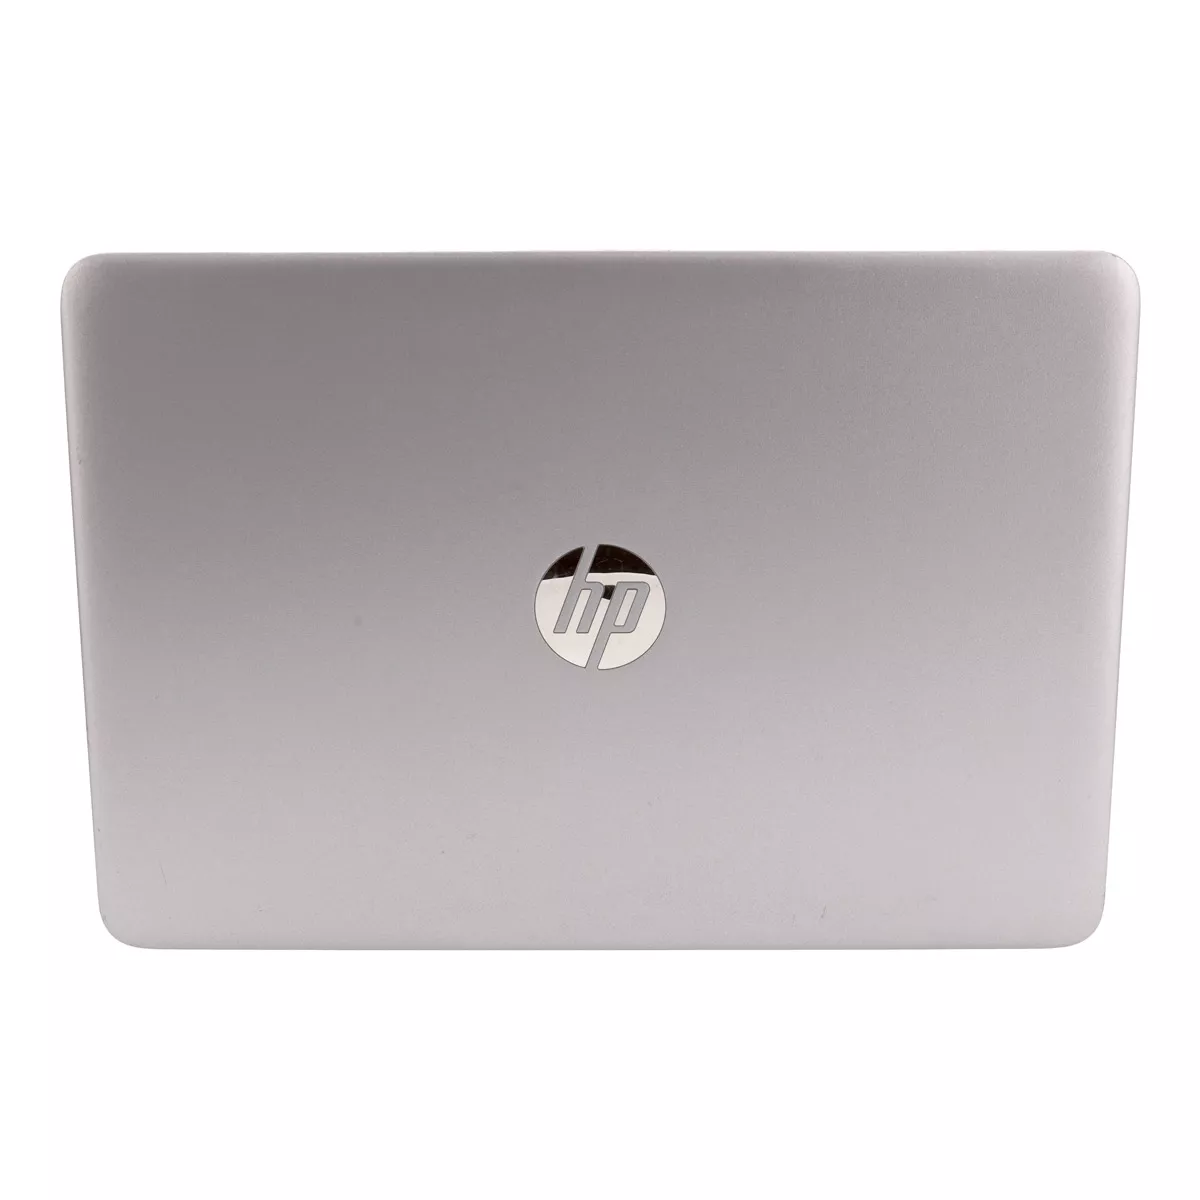 HP EliteBook 840 G3 Core i5 6300U 8 GB 240 GB A